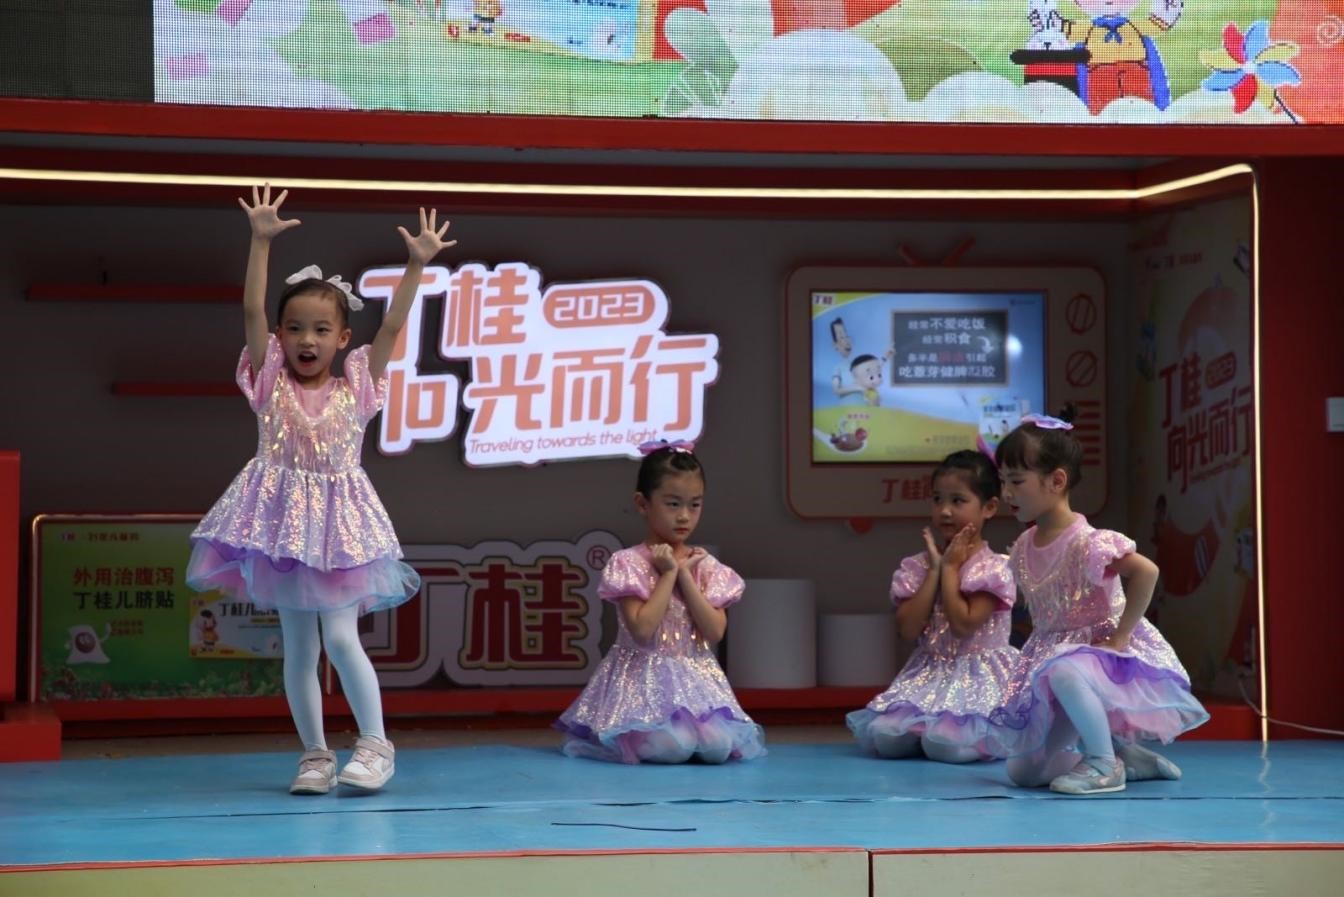 31年儿童药品牌丁桂携手珠江频道 共举“向光而行”儿童公益活动